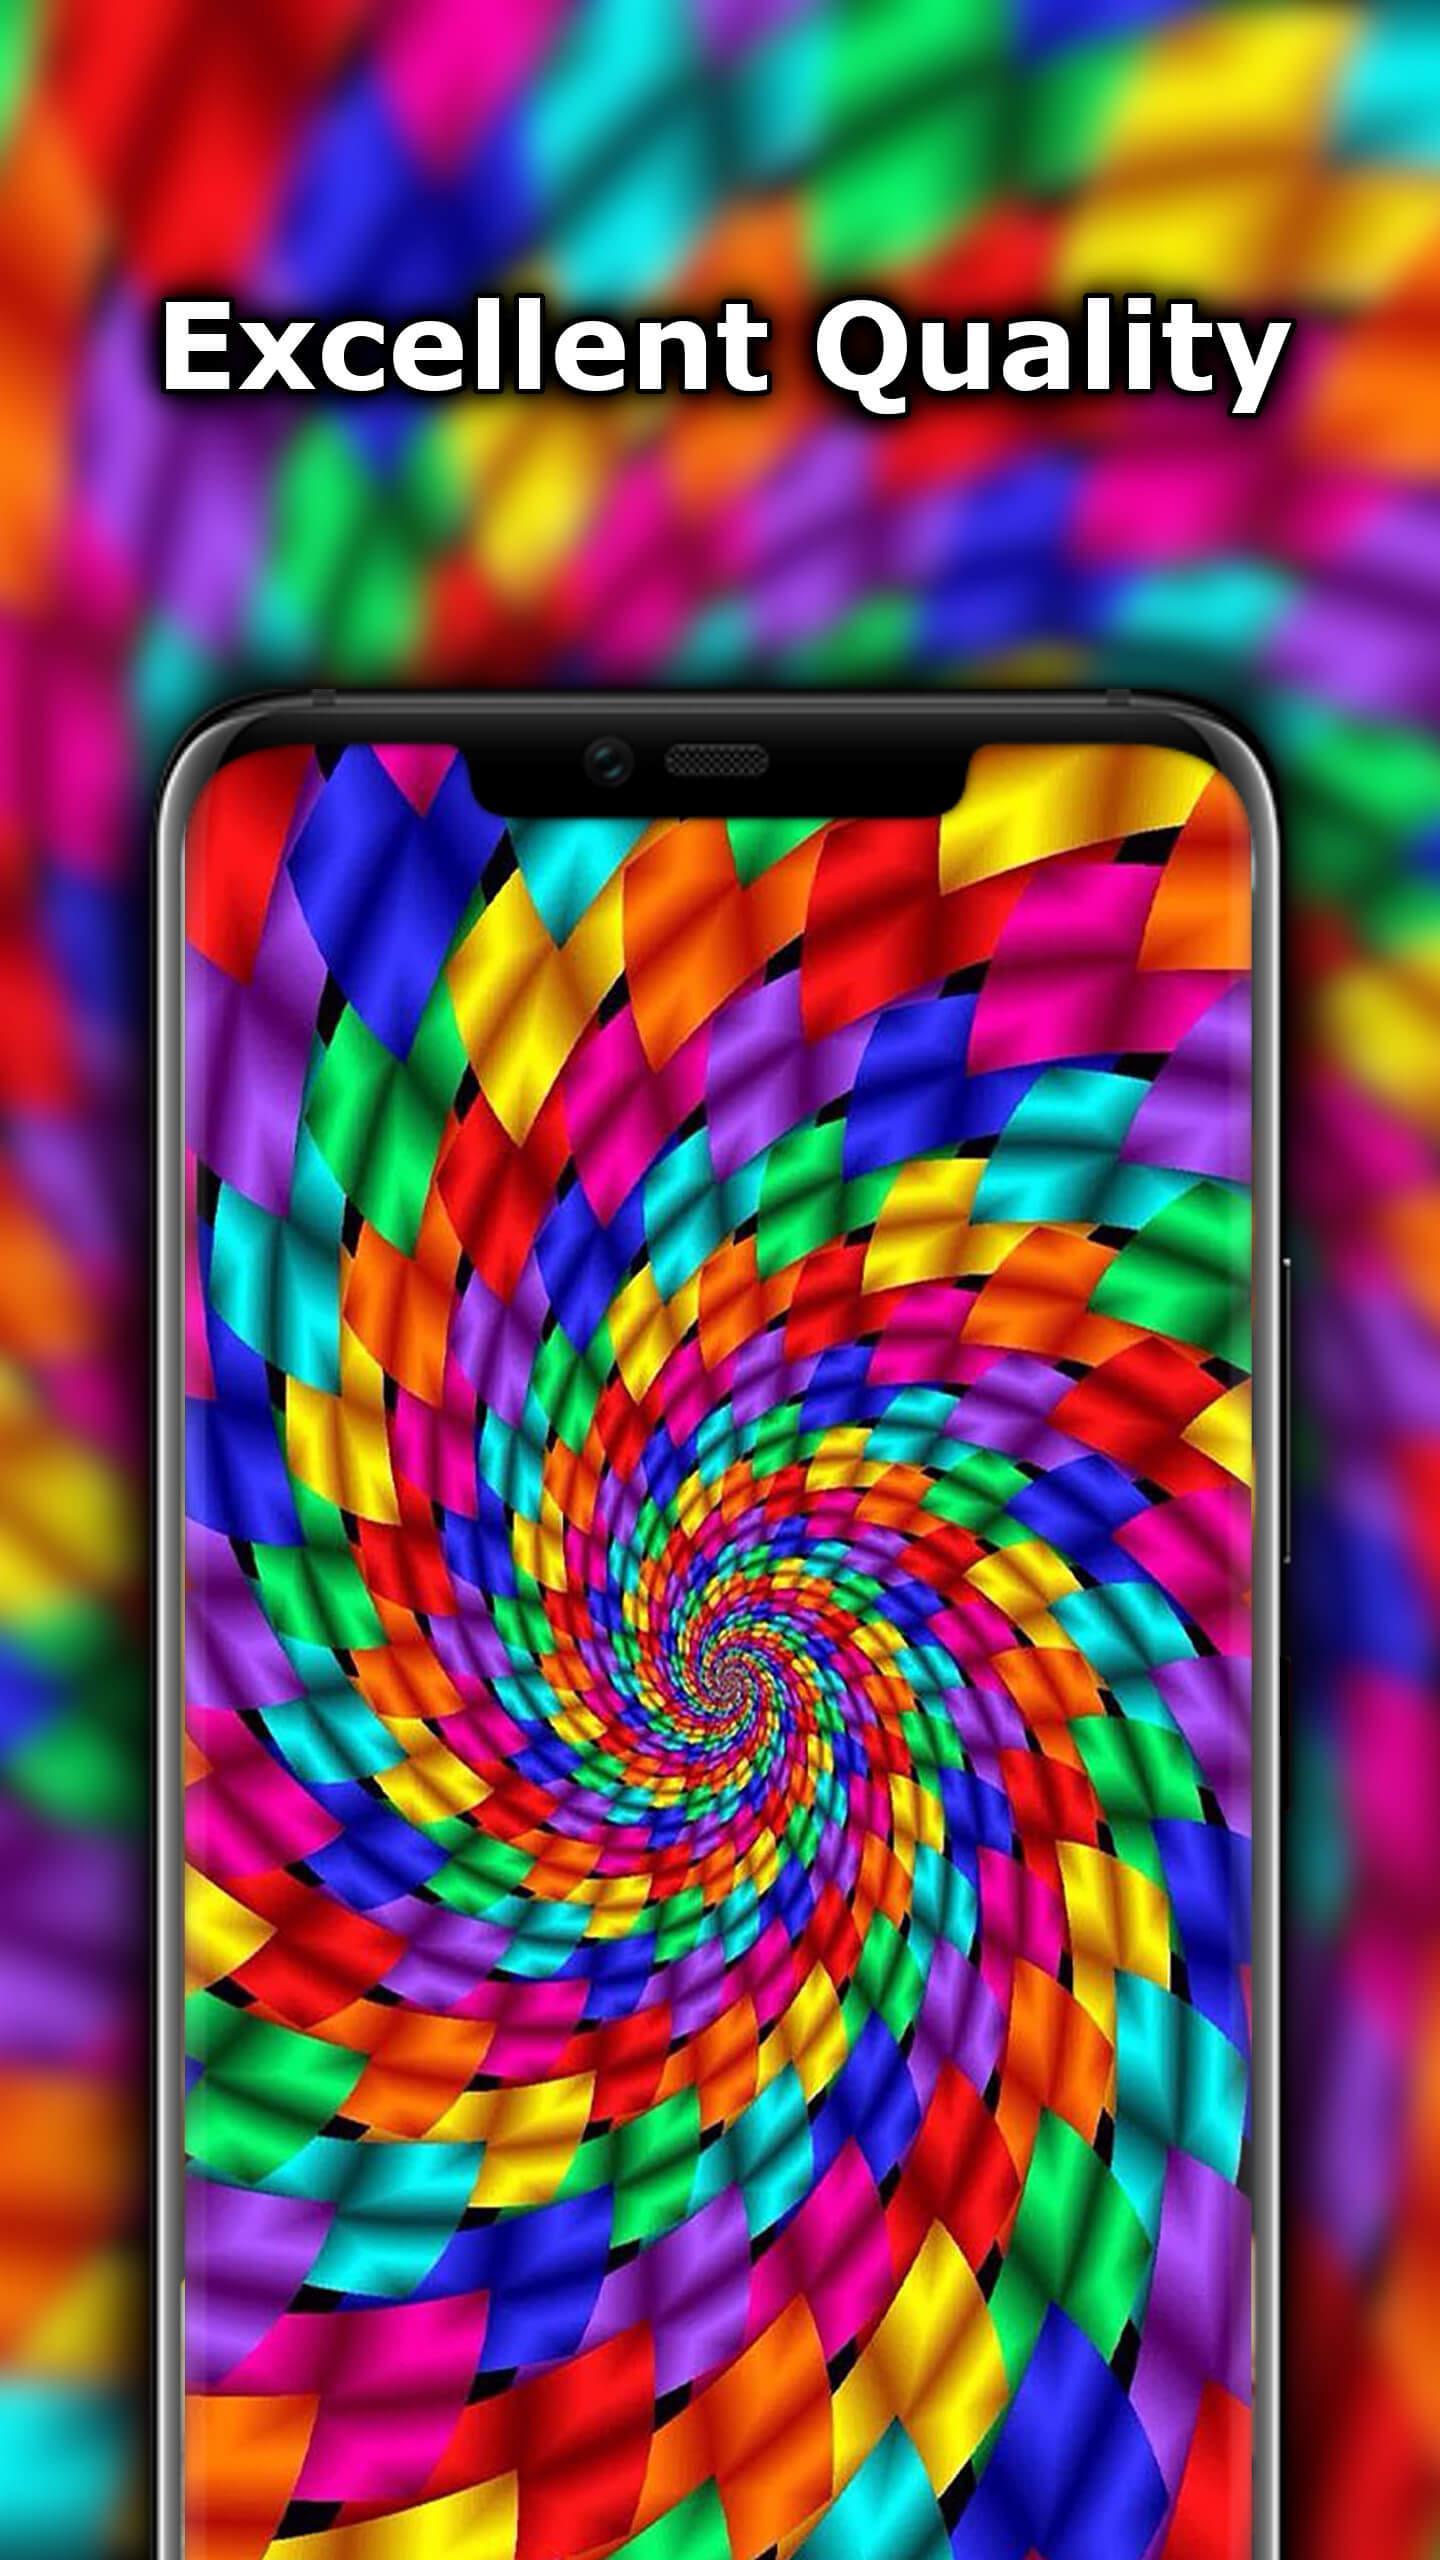 Wallpaper Pelangi Yang Indah For Android Apk Download